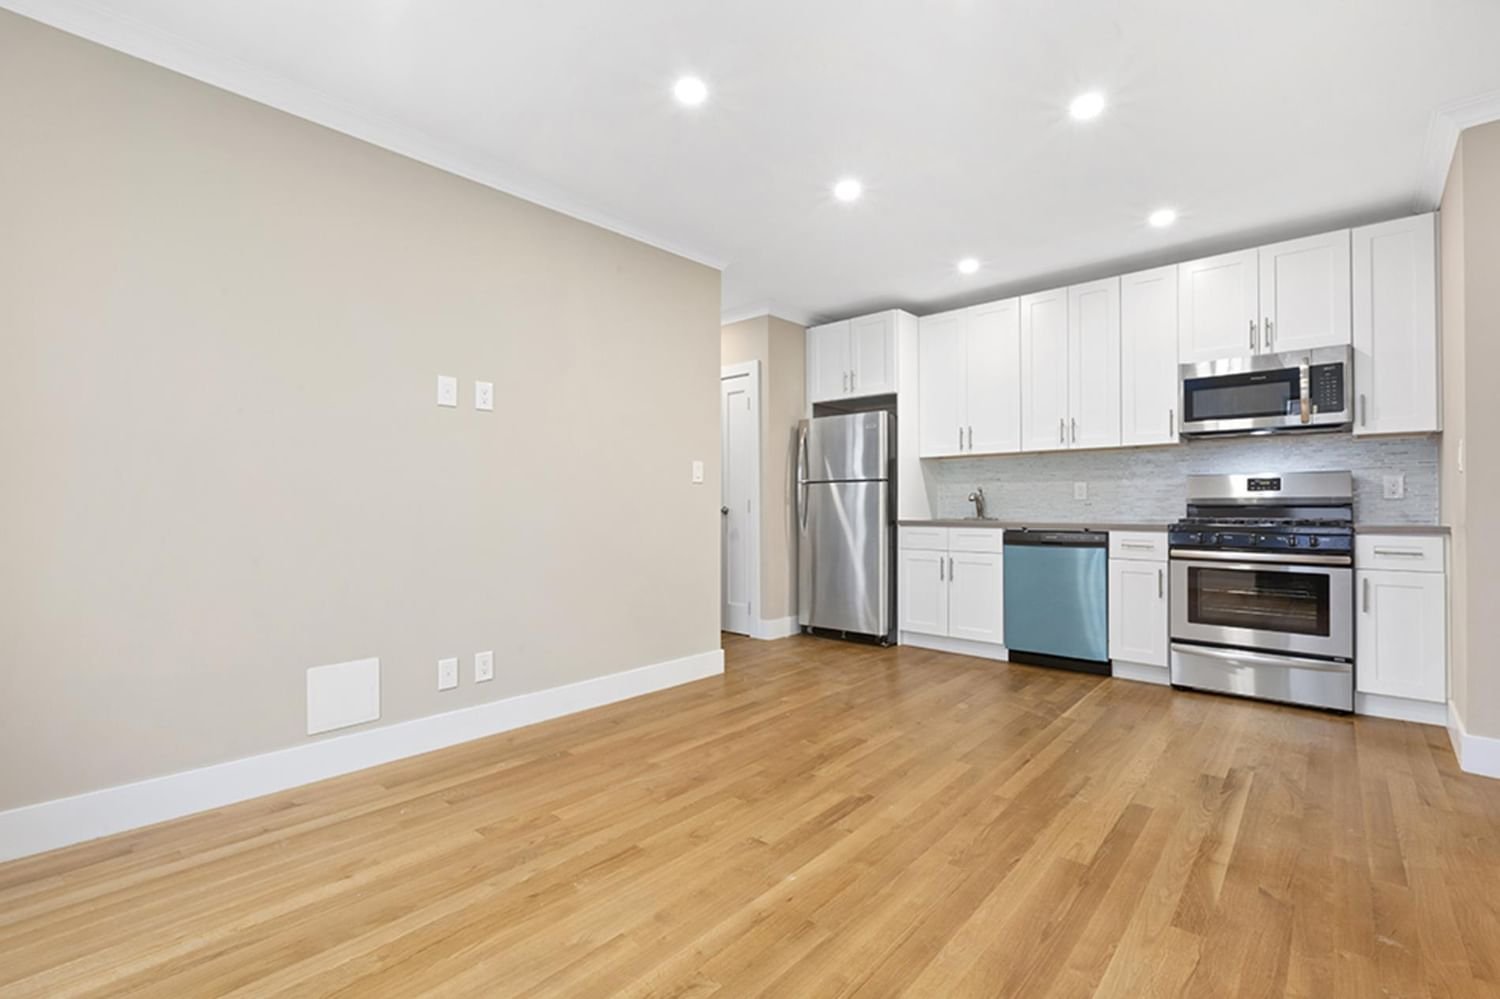 Real estate property located at 811 Walton E-22, Bronx, Mott Haven, New York City, NY